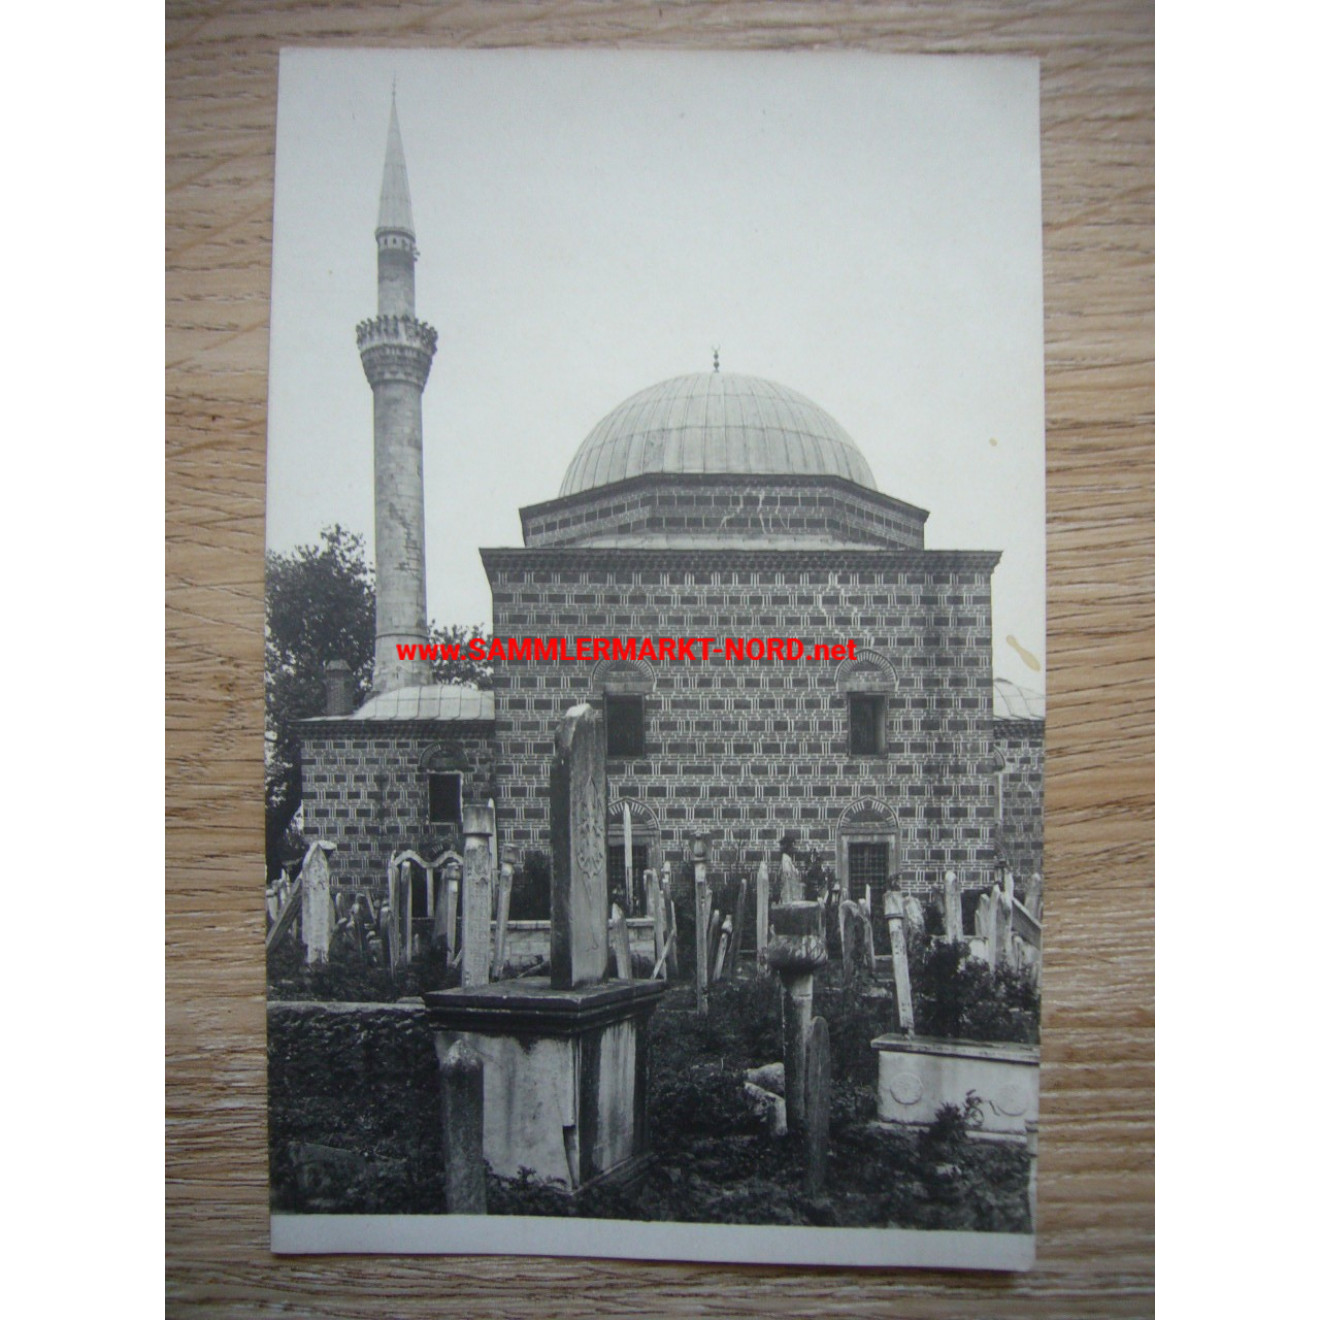 ÜSKÜB Mazedonien Balkan - Moschee mit türkischen Friedhof